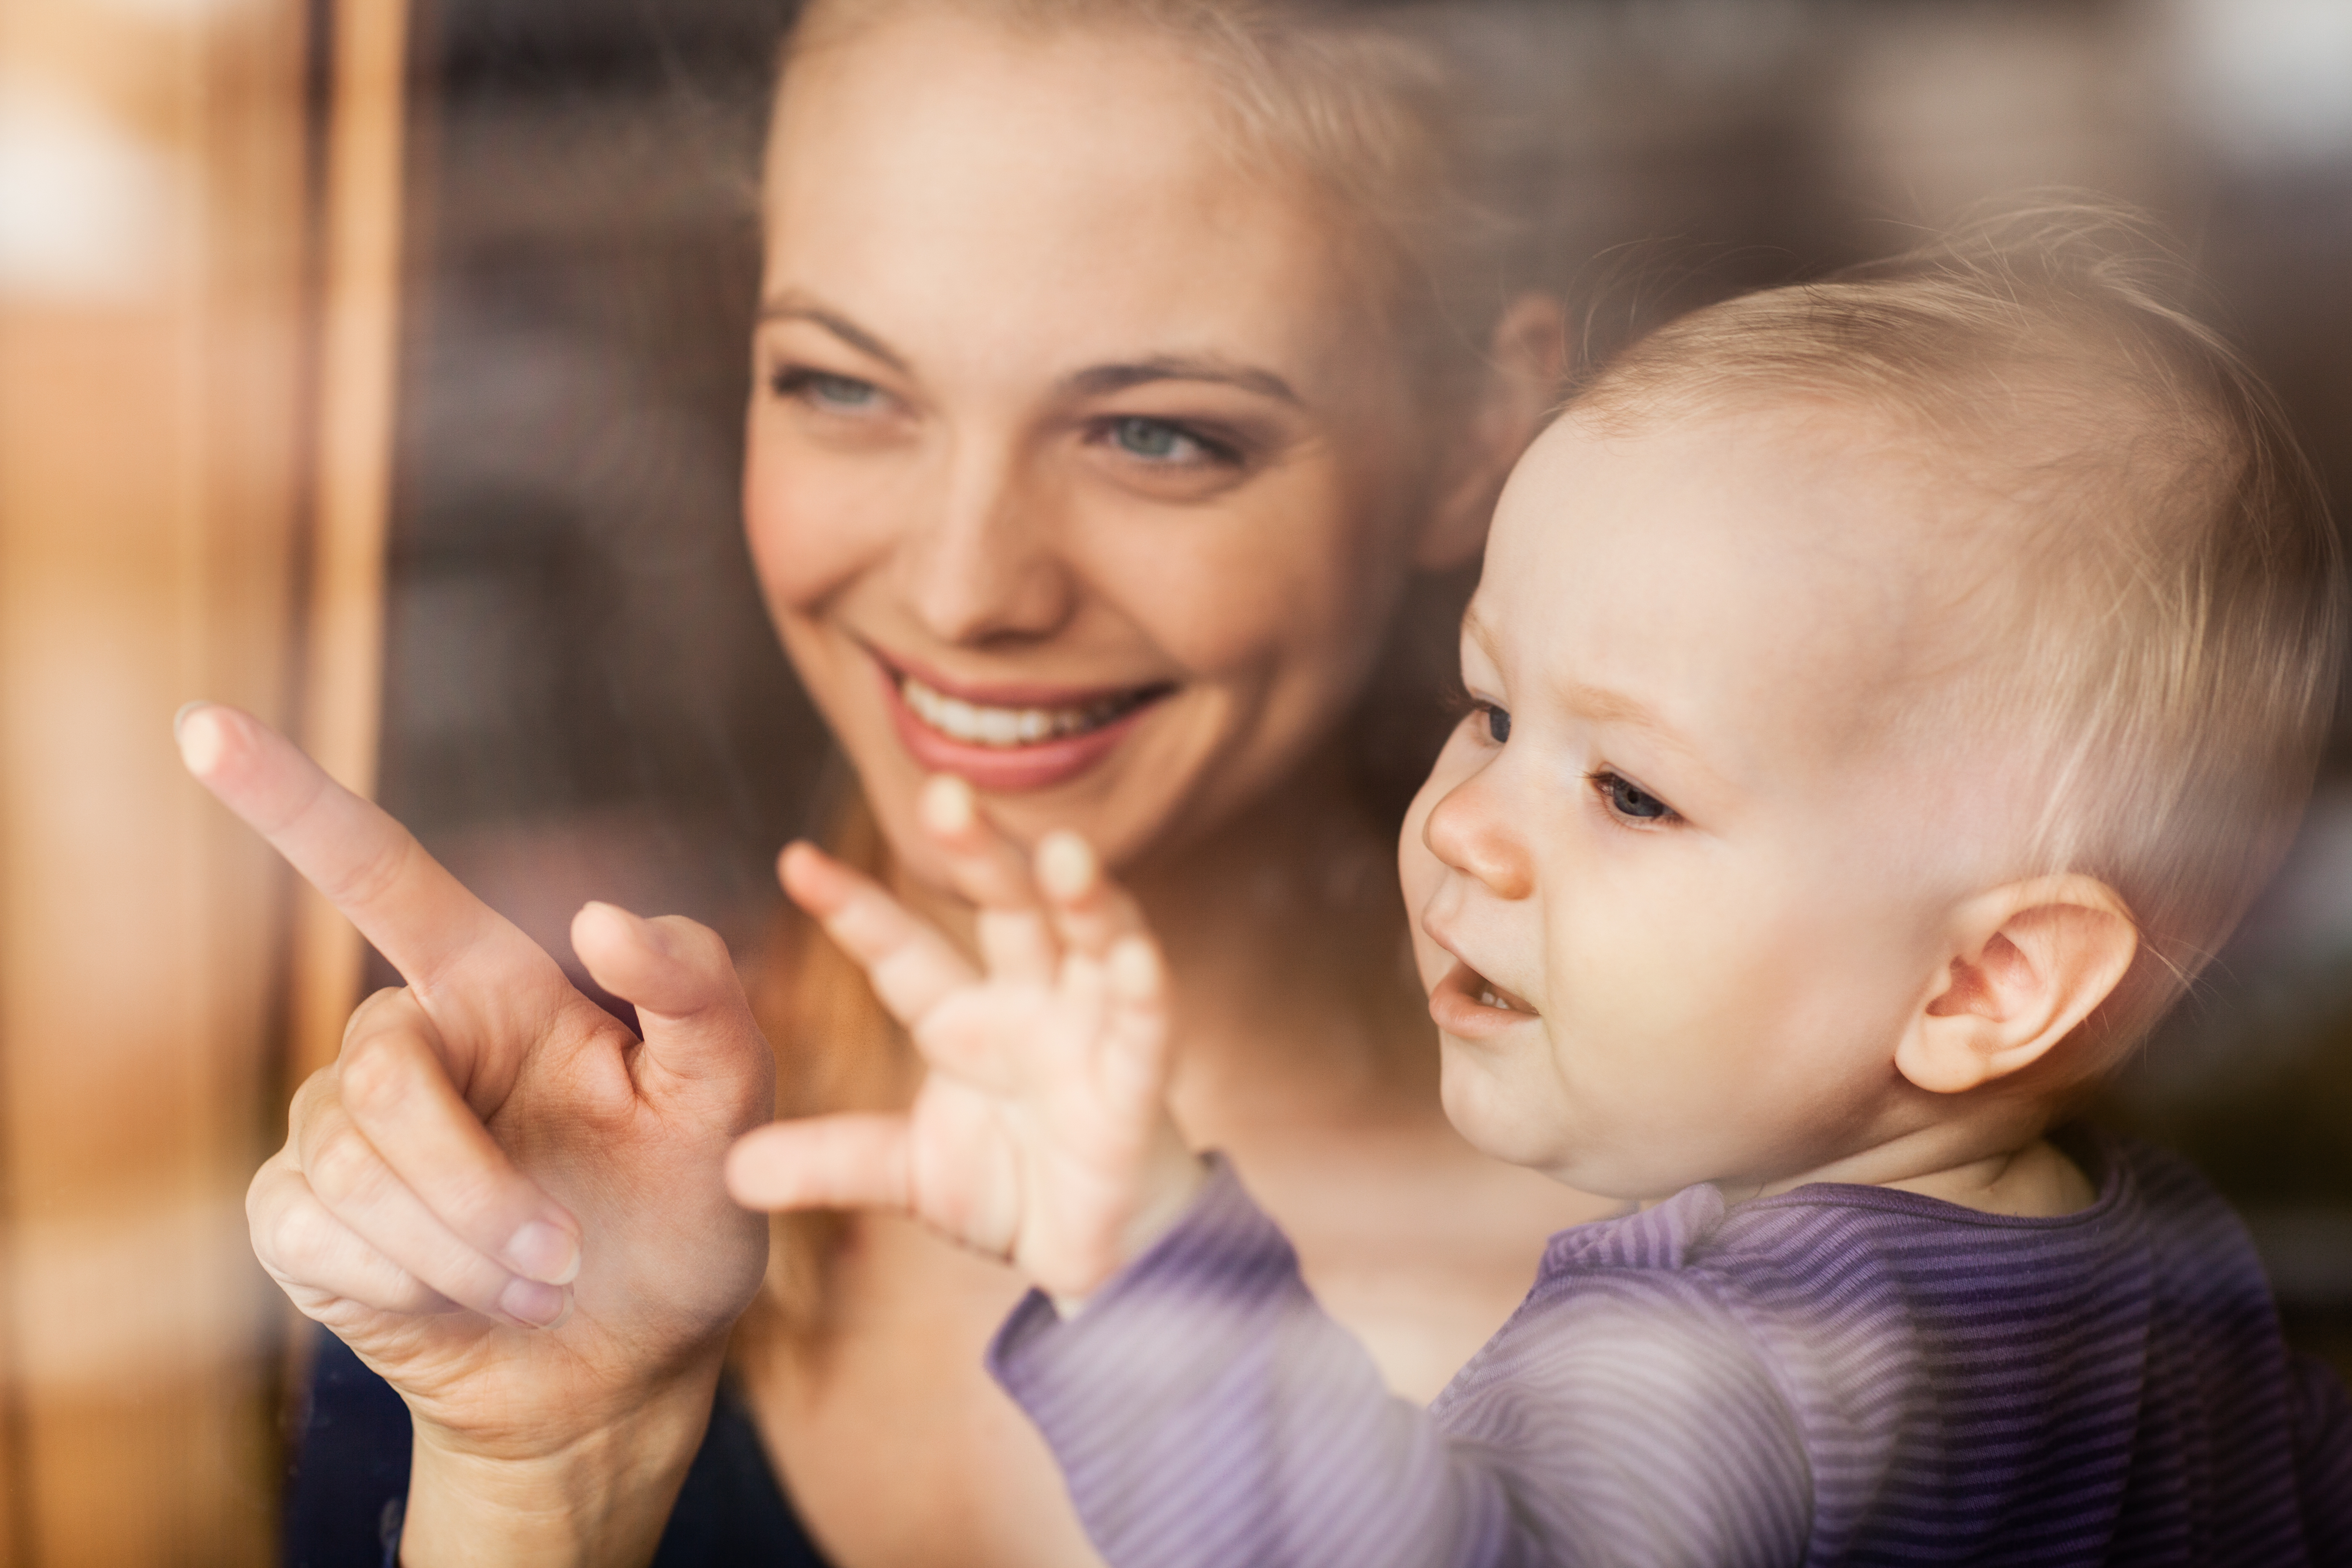 En kvinne holder et lite barn og peker ut gjennom et vindu